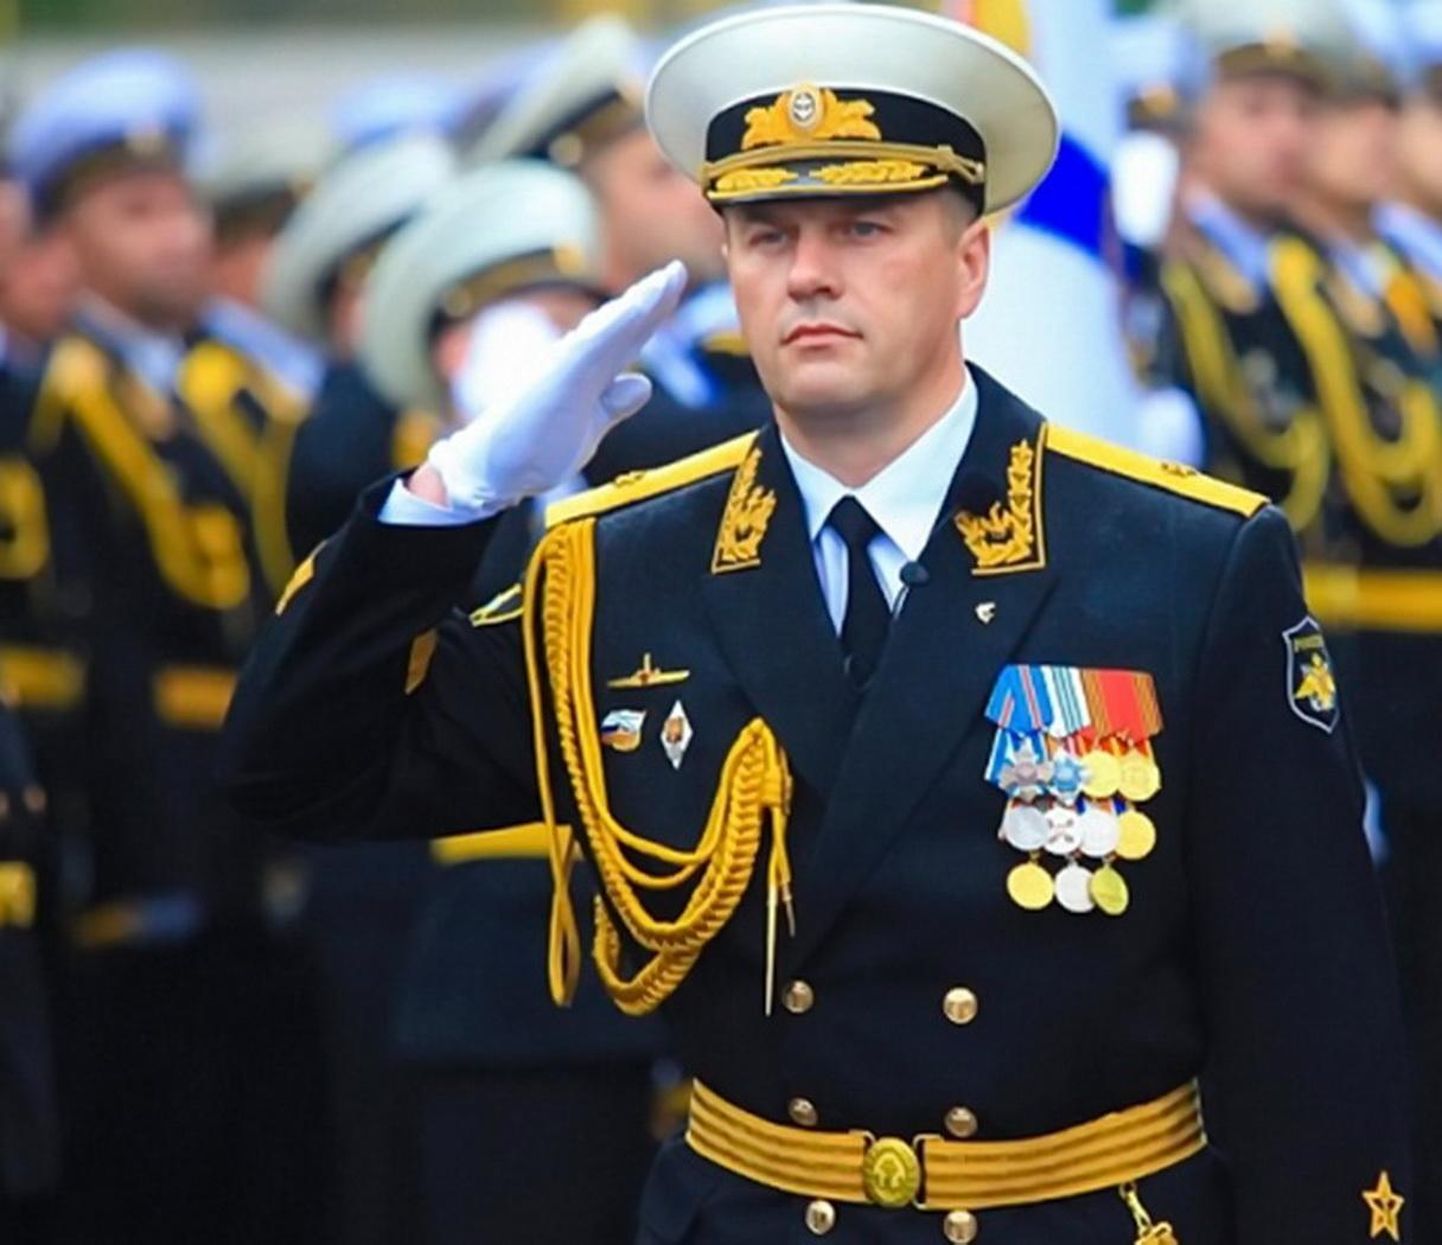 Venemaa Musta mere laevastiku alused hõivasid kolm Ukraina sõjalaeva koos 24 Ukraina meremehega. Väidetavalt oli Viktor Liina üks selle hõivamisoperatsiooni juhte.